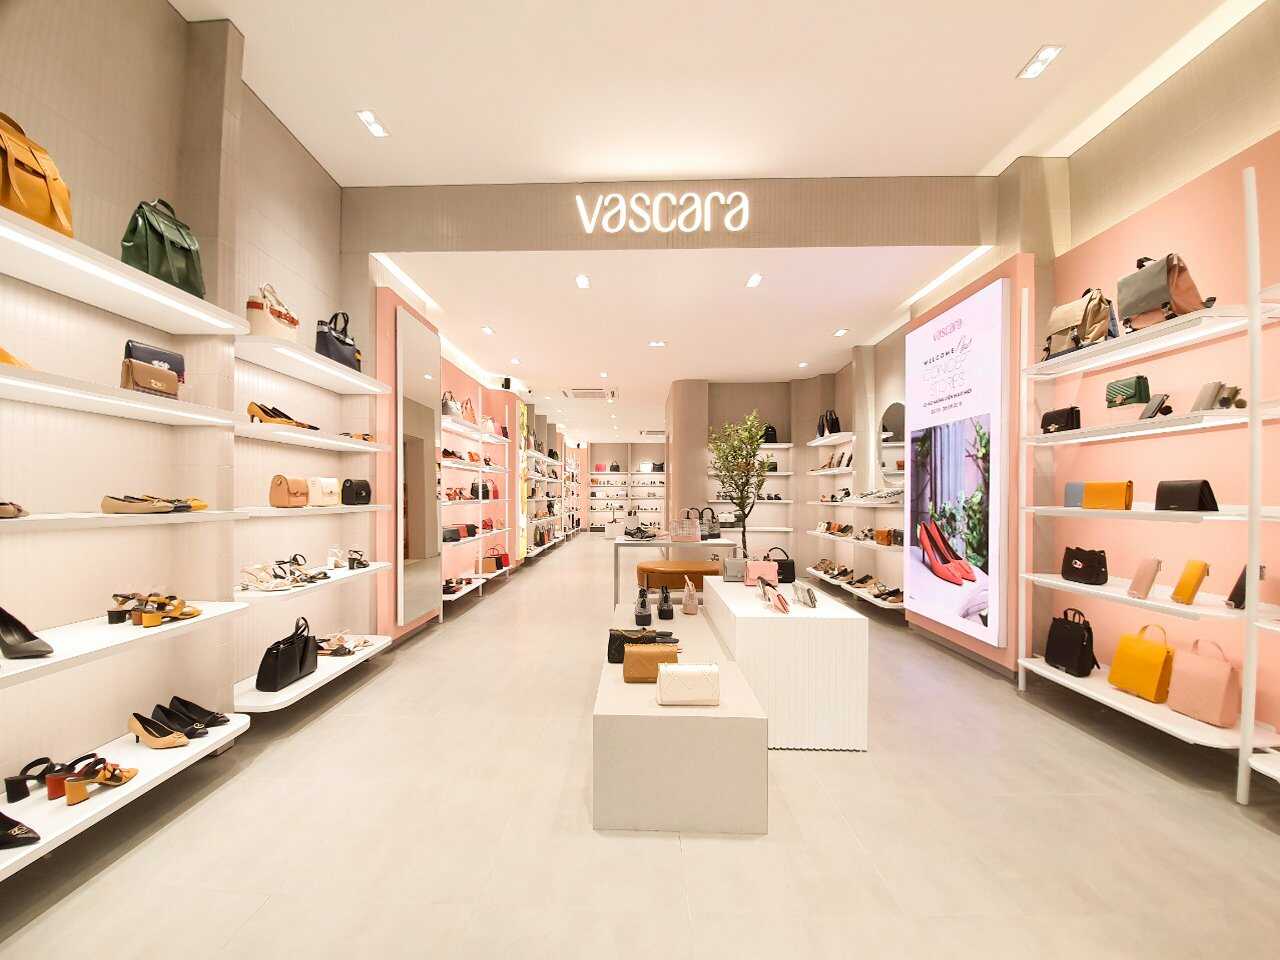 Shop giày Vascara cùng các mặc hàng thời trang